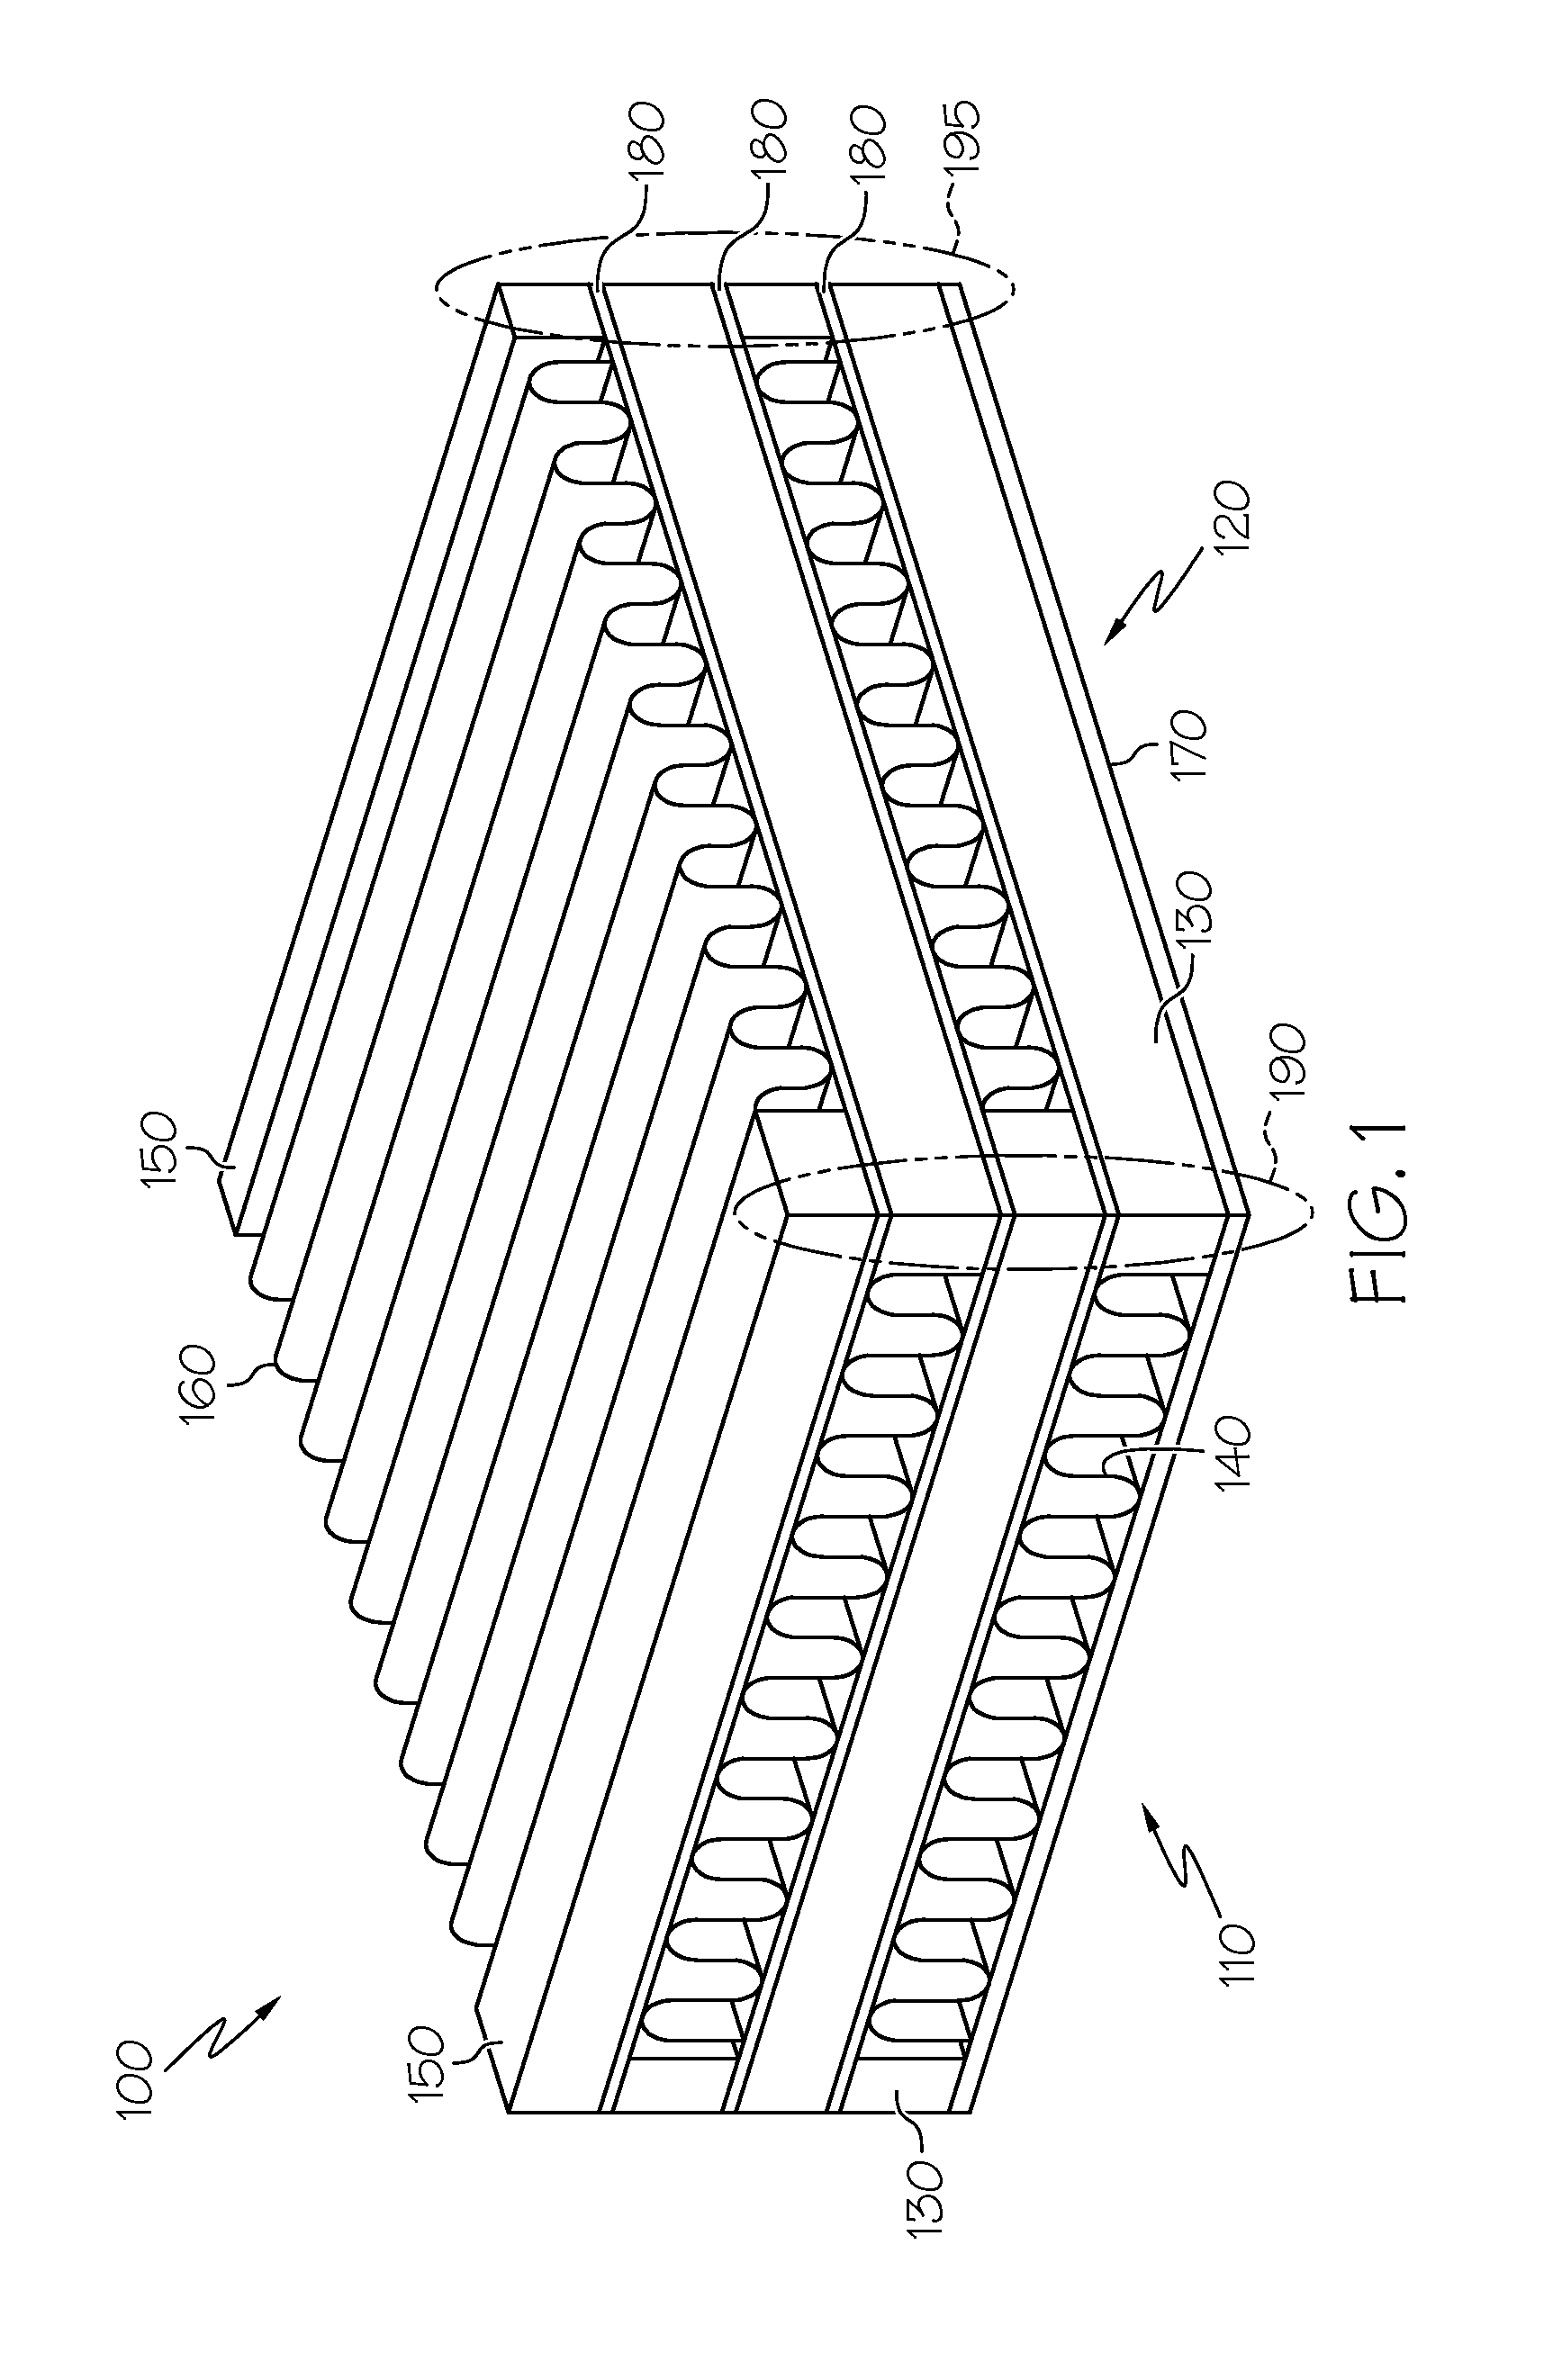 Plate-fin heat exchanger with a porous blocker bar